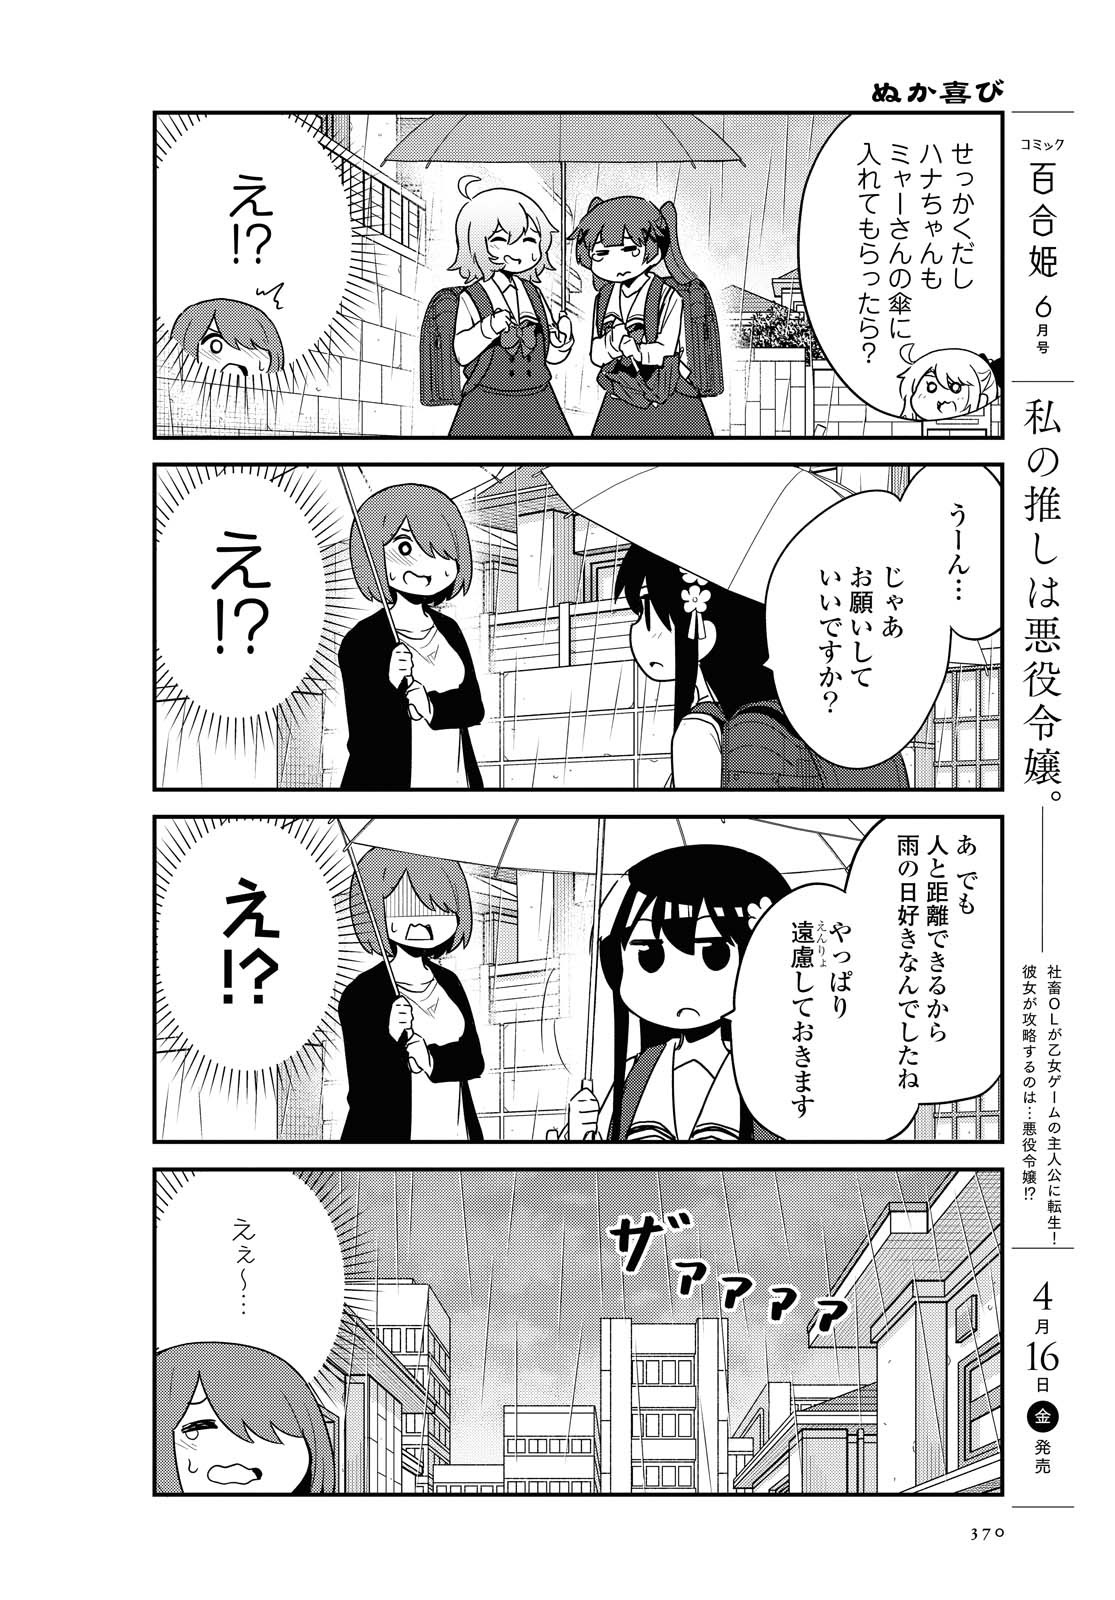 Watashi ni Tenshi ga Maiorita! - Chapter 79 - Page 14